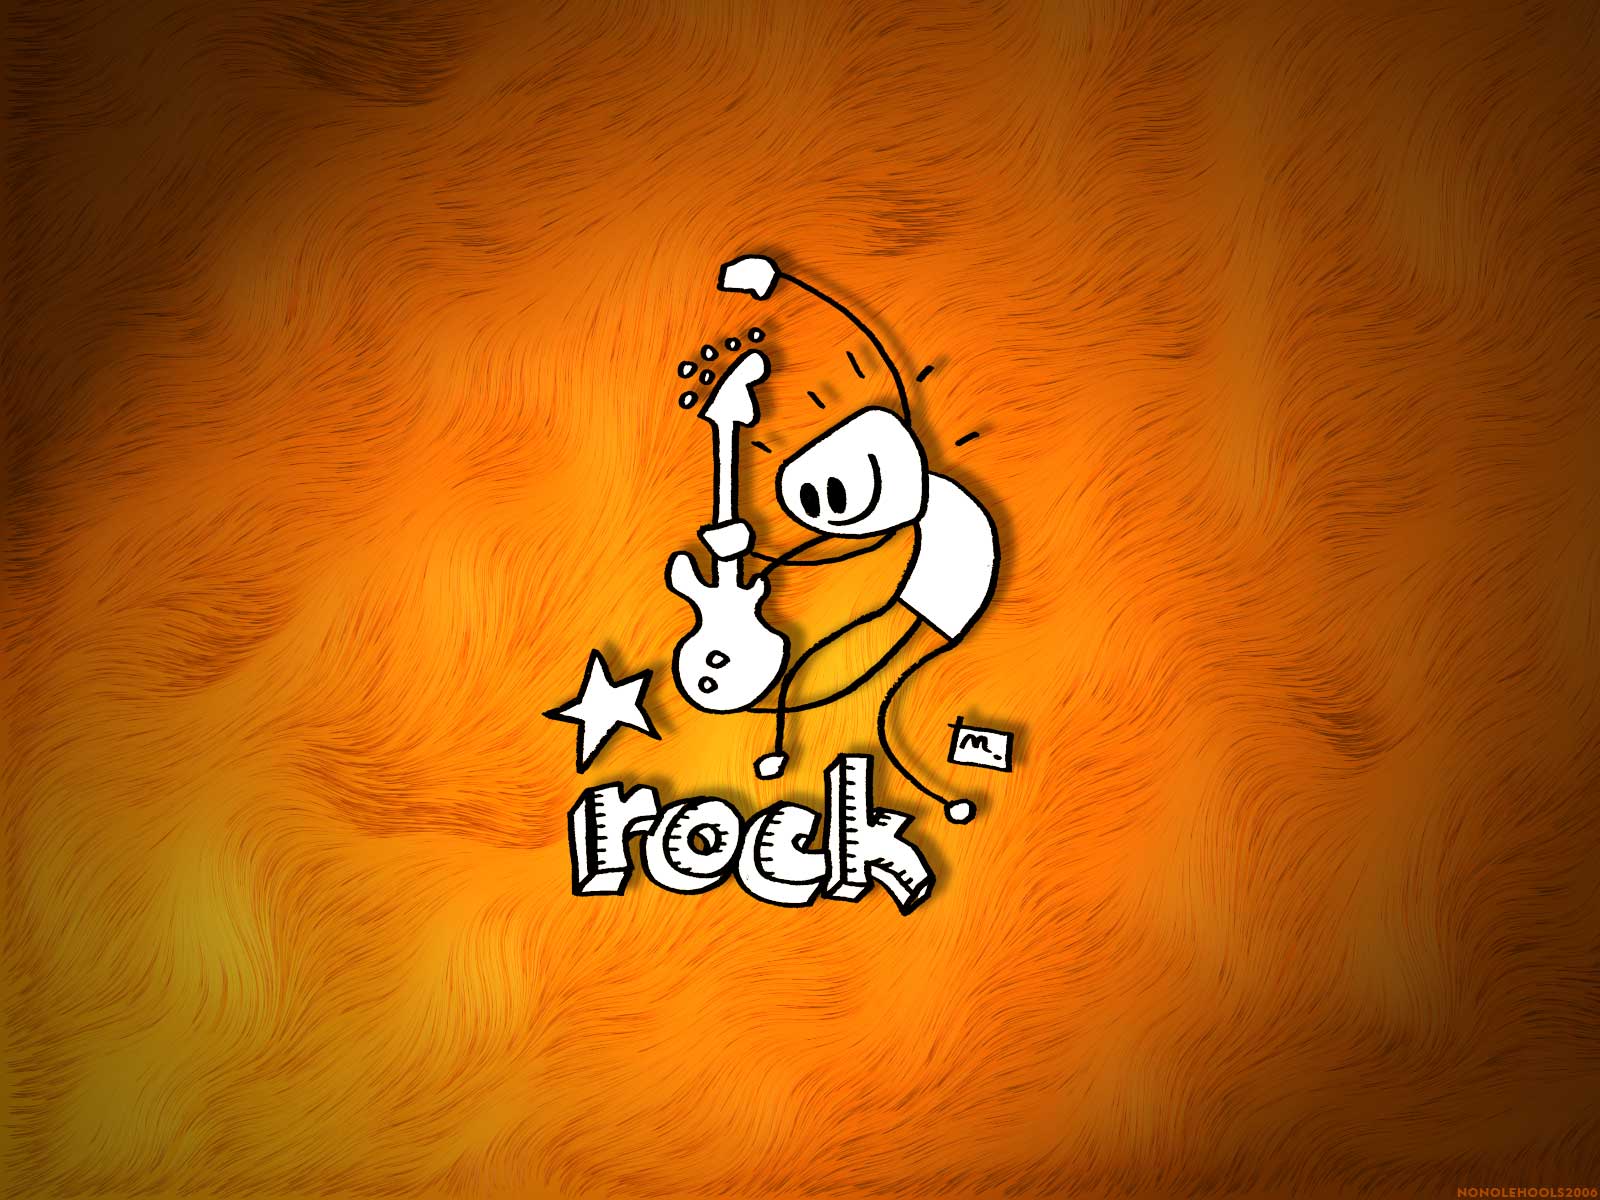 Free download Im225genes De Rock De Lujo Para Fondo De Pantalla Fondos  [1600x1200] for your Desktop, Mobile & Tablet | Explore 70+ Rock Wallpapers  | Rock Band Wallpaper, Classic Rock Wallpaper, Punk Rock Background